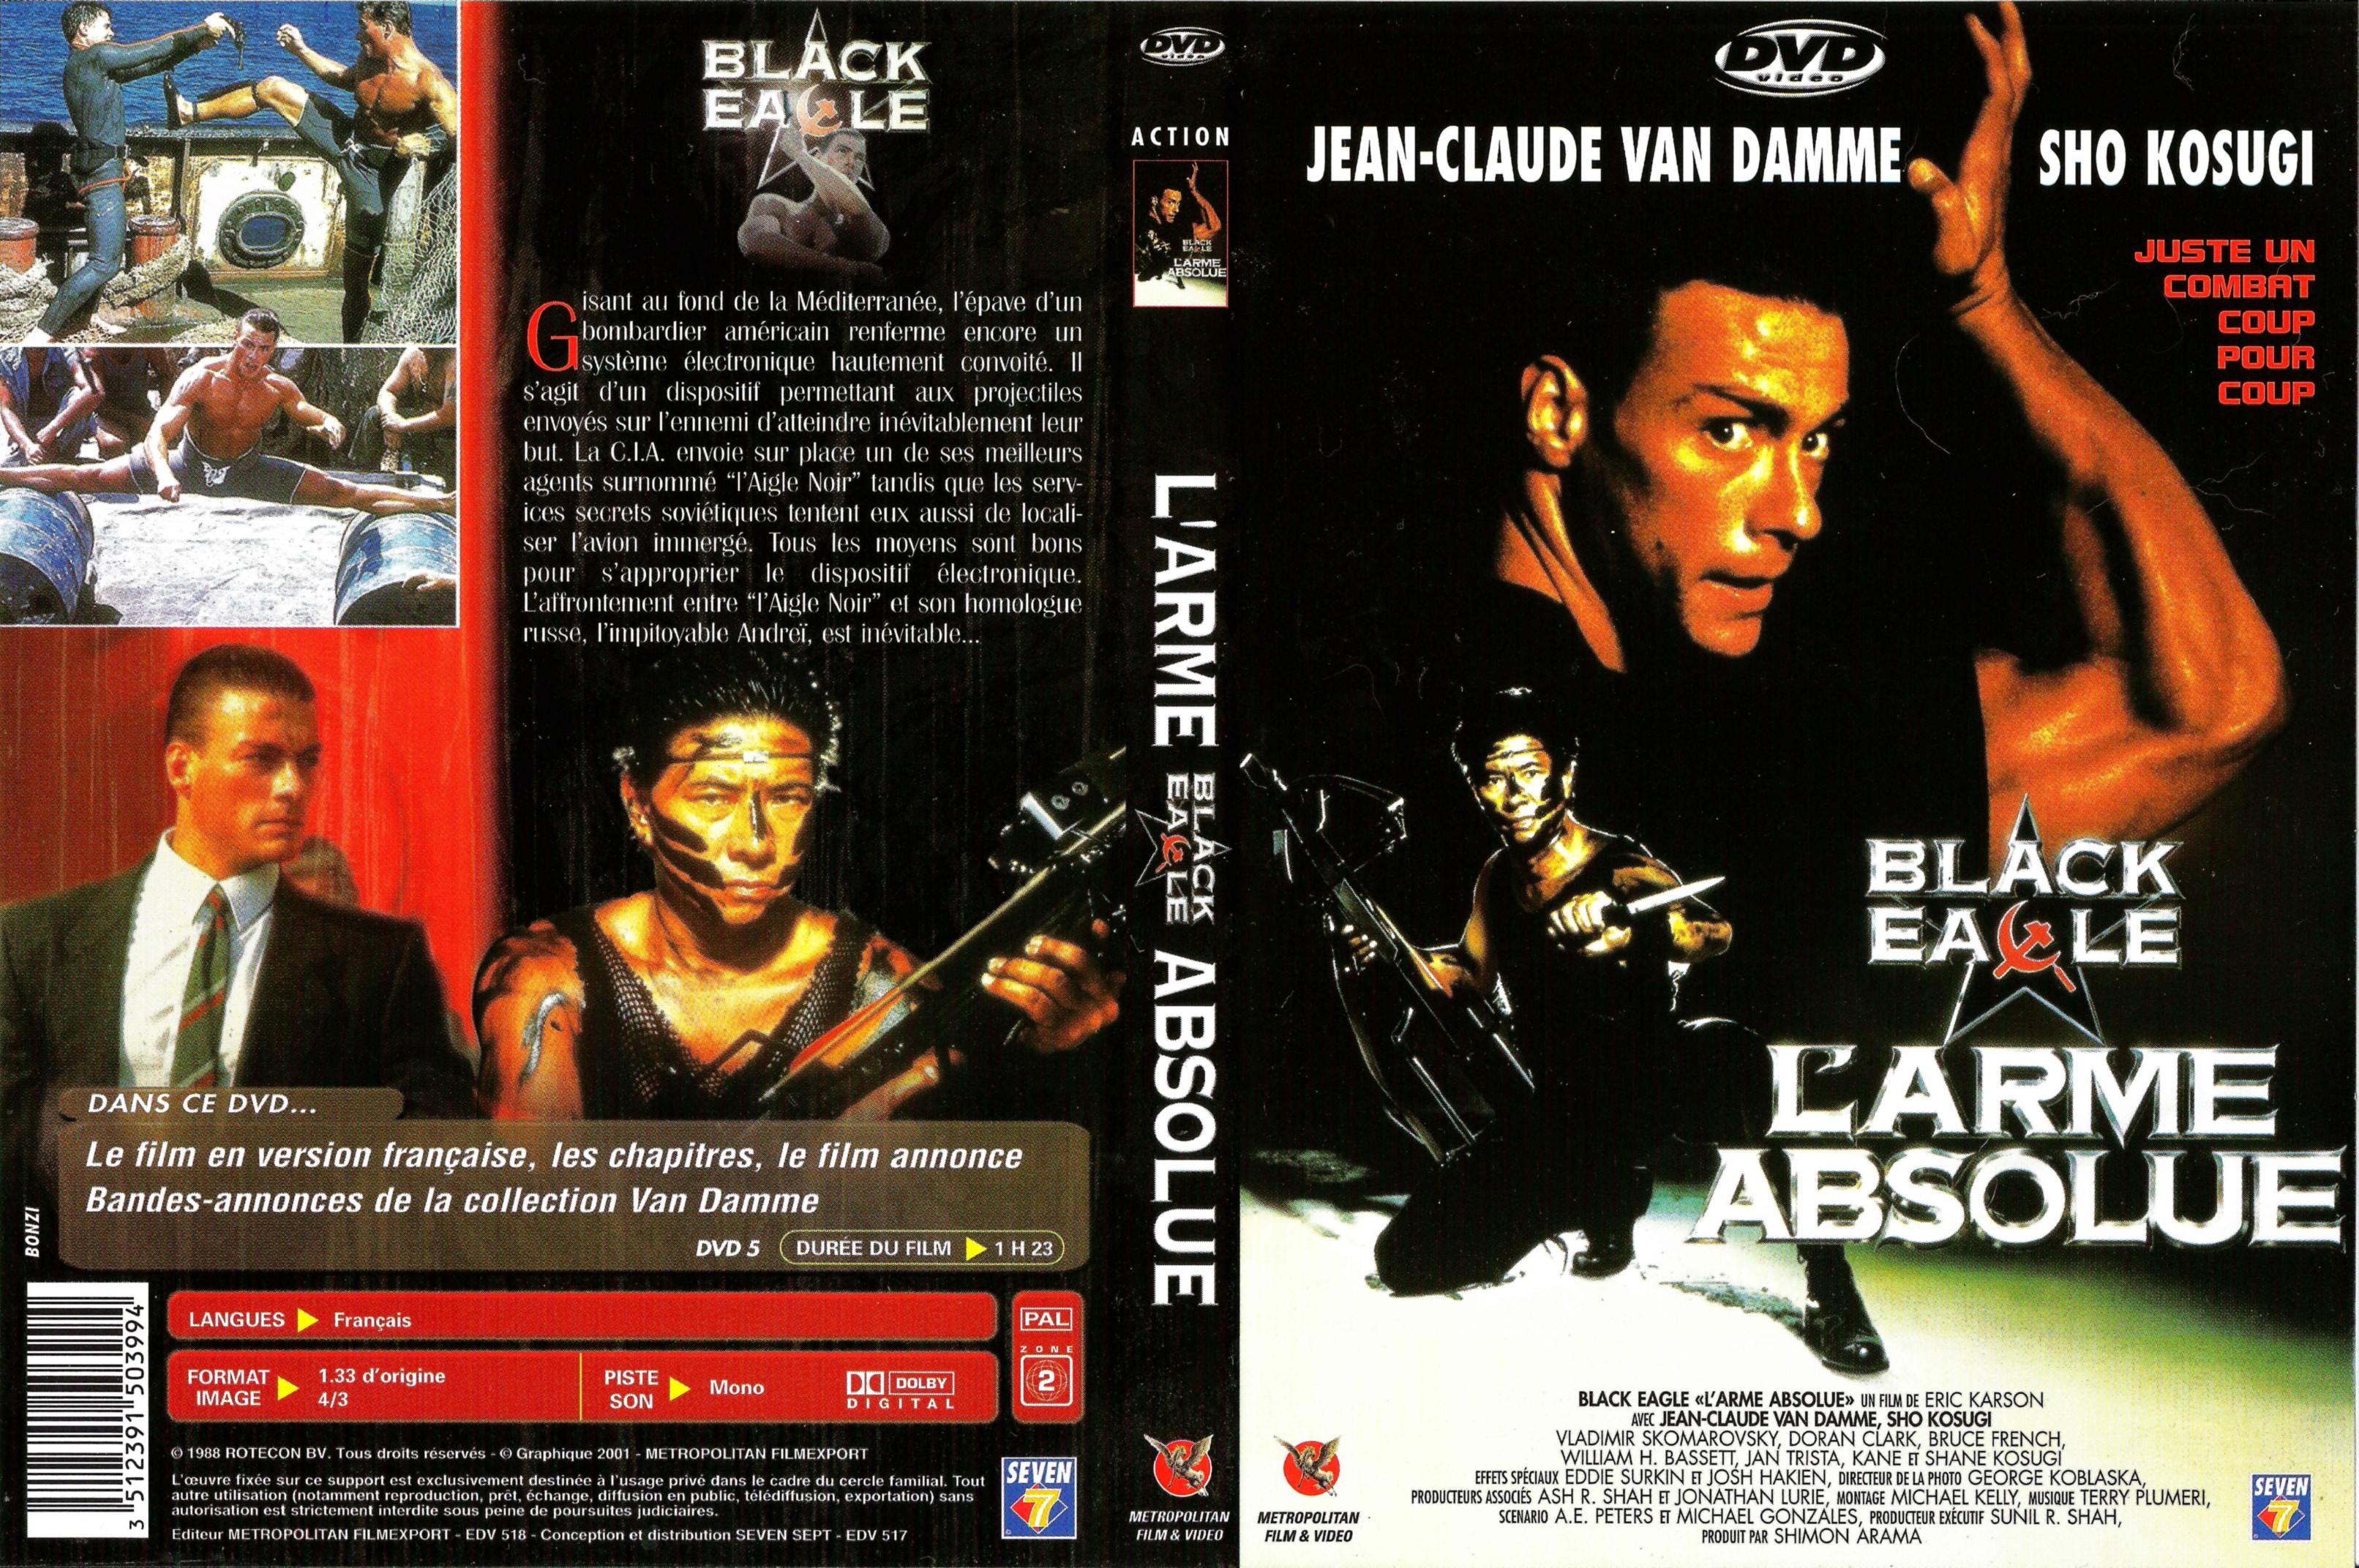 Jaquette DVD Black eagle v2